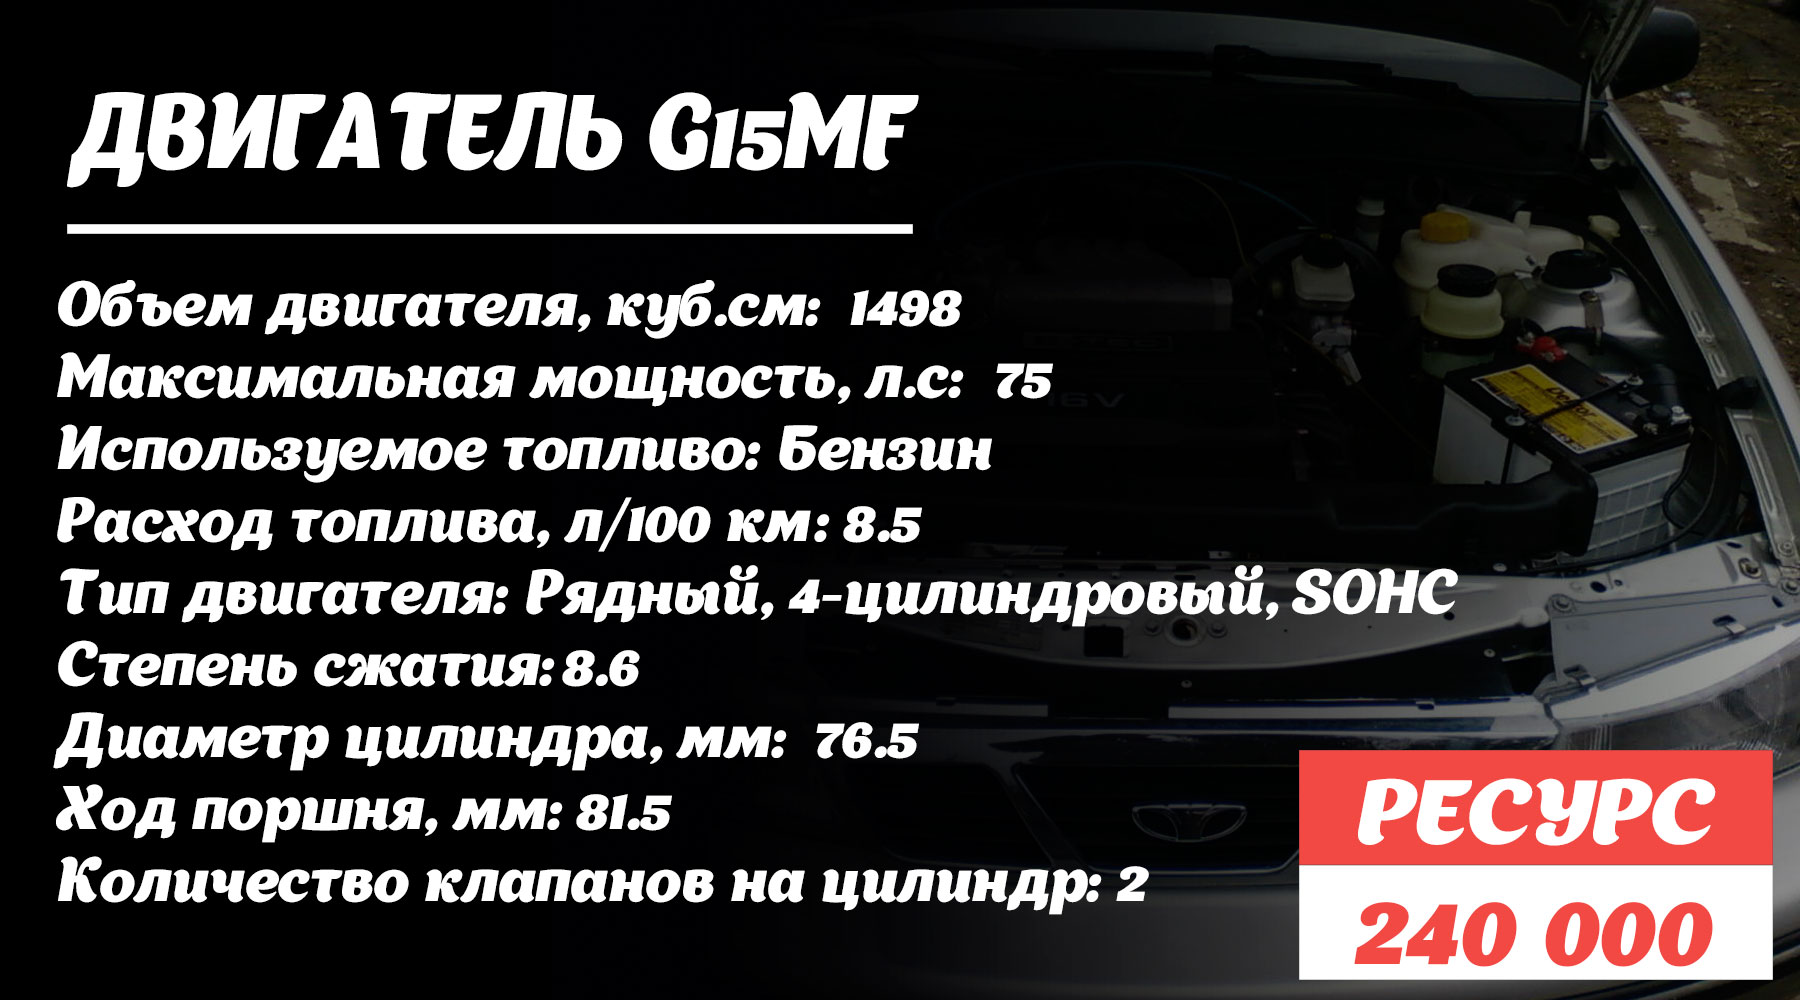 Ресурс двигателя G15MF